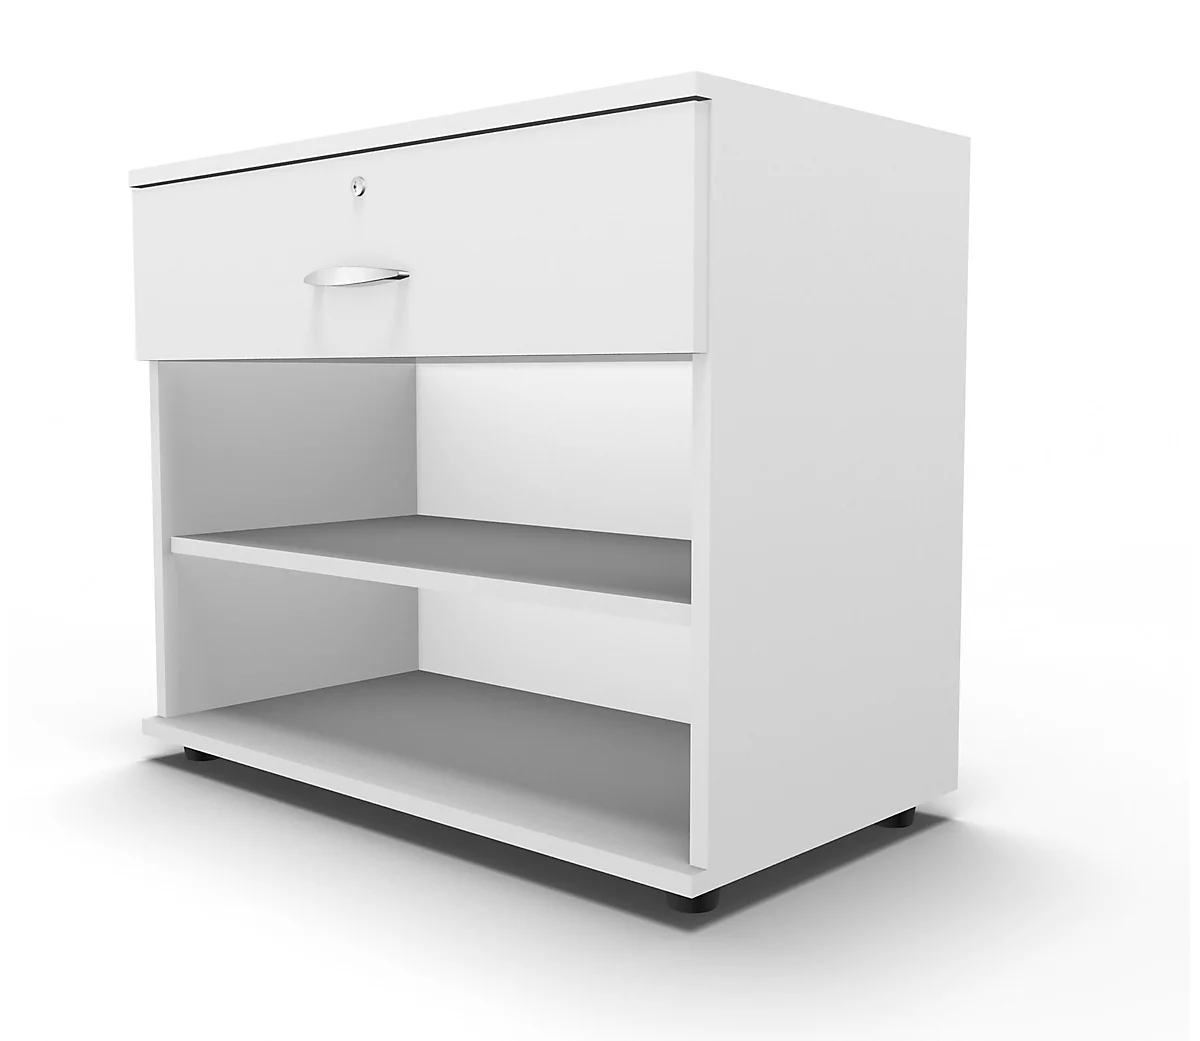 Schäfer Shop Select Aparador, con cajón, con cerradura, tablero aglomerado, An 800 x P 420 x Al 663 mm, blanco